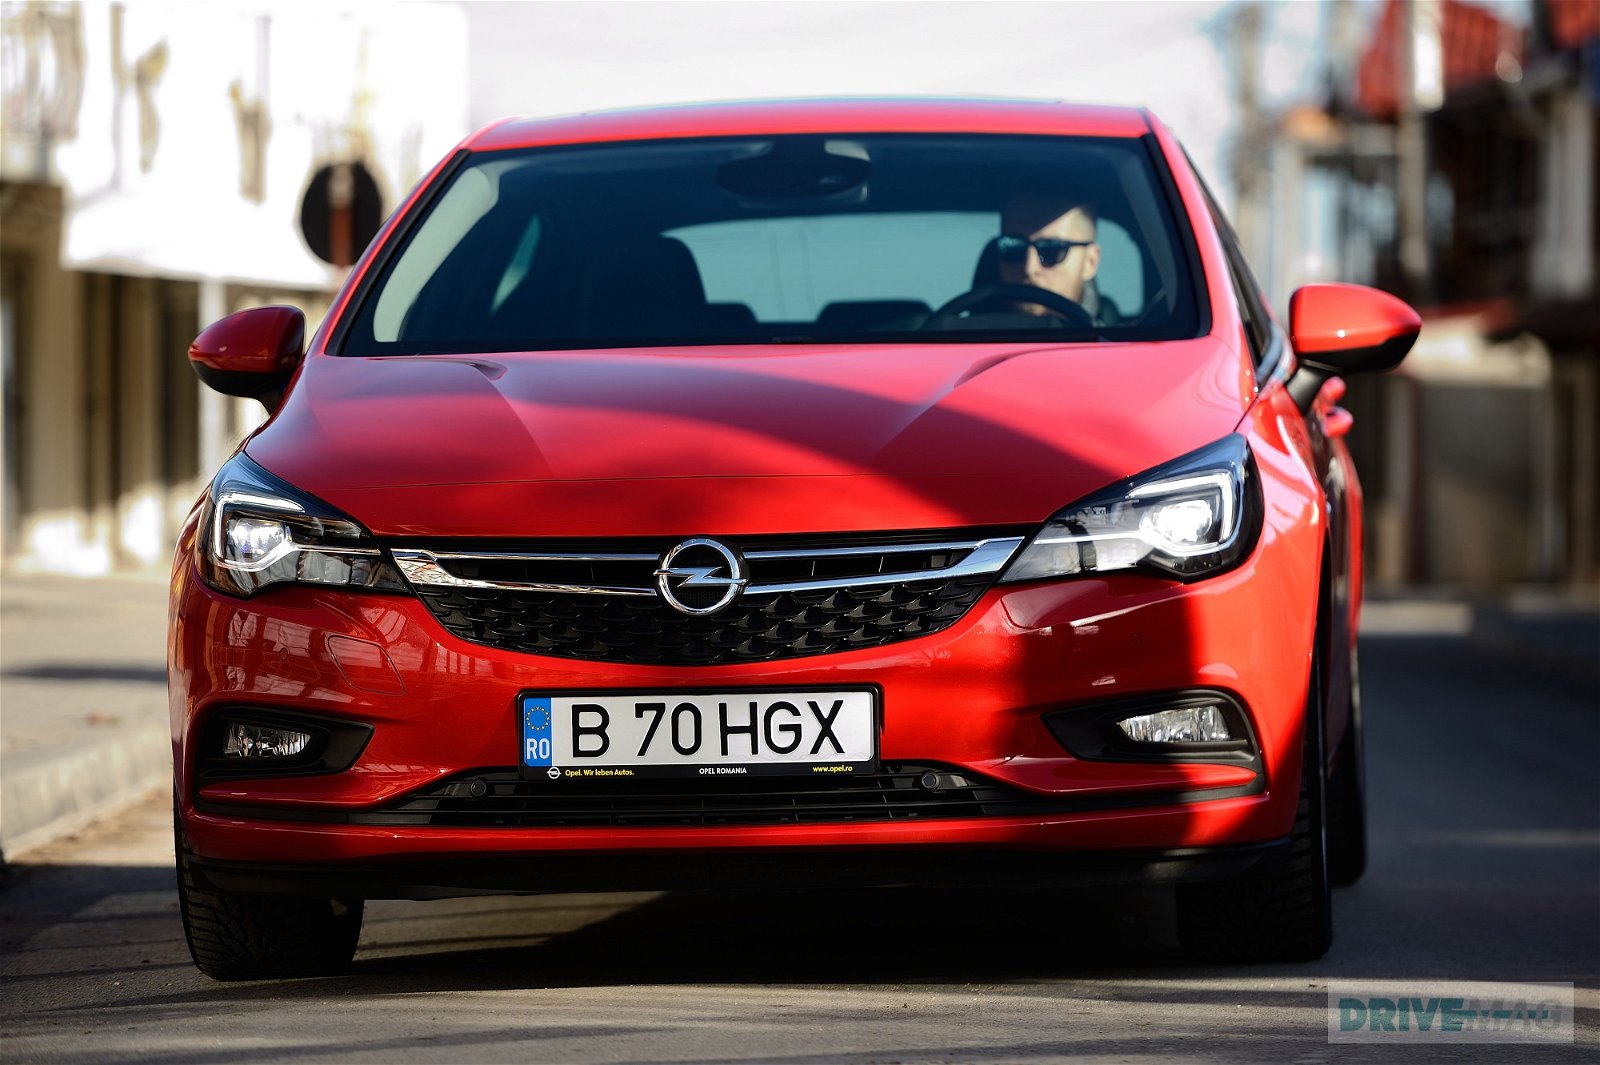 2015 Opel Astra K Imagined in Sportier Three-Door GTC Variant -  autoevolution